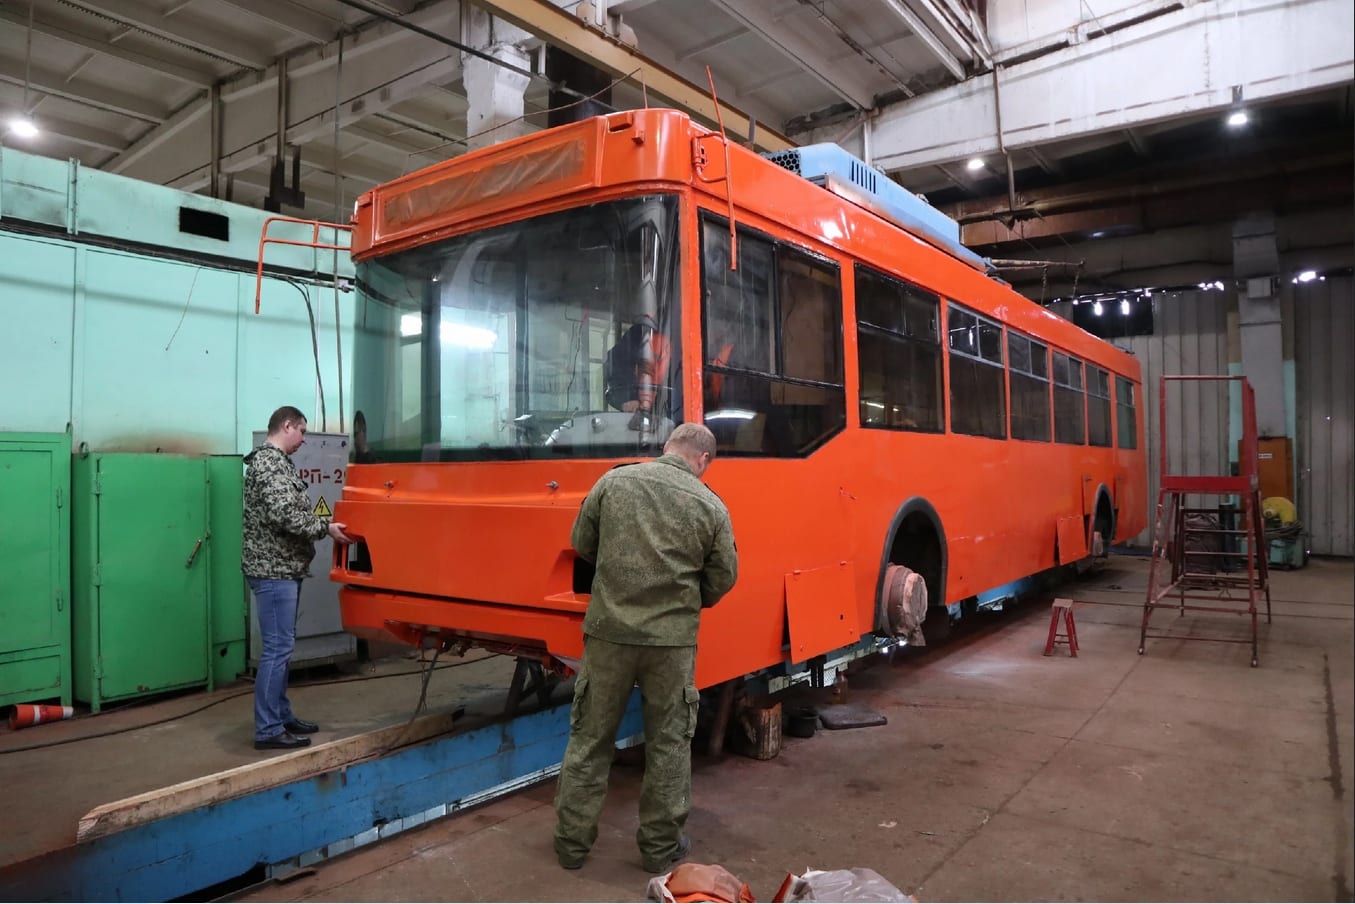 Ярко-оранжевый московский троллейбус отправился в первый рейс по Костроме 17 февраля